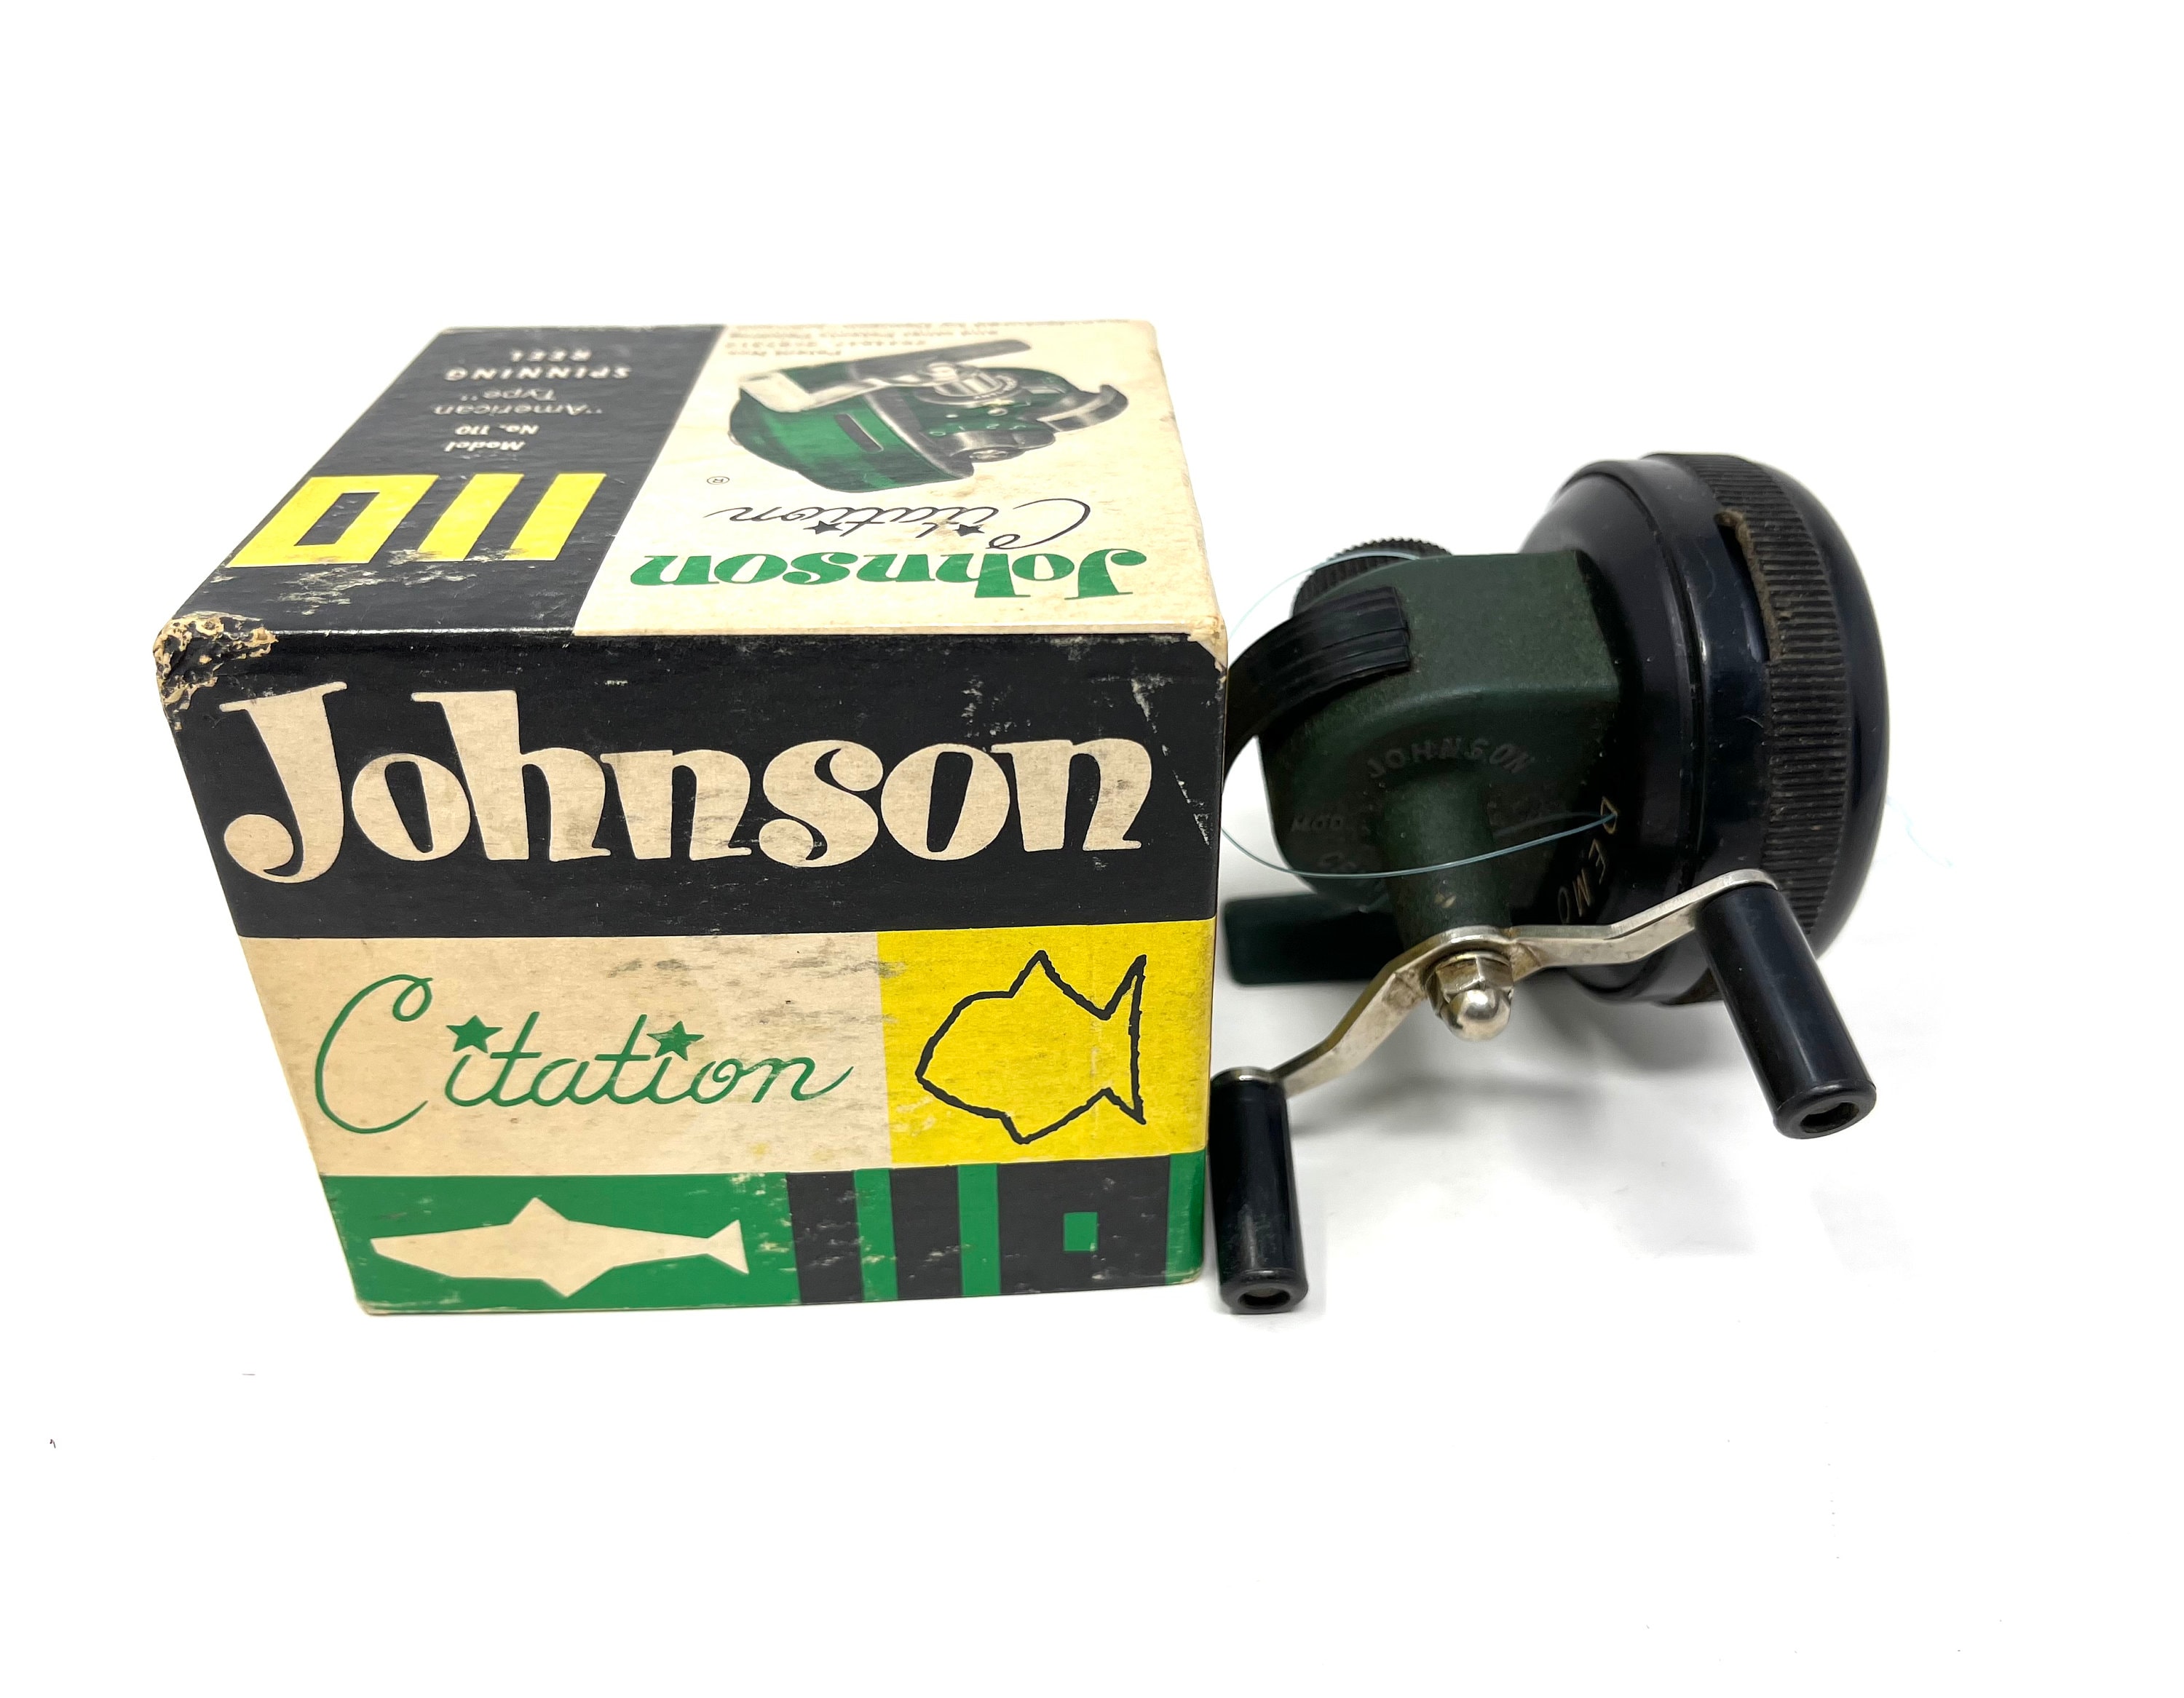 Vintage ,JOHNSON Citation Model 110-A, Spin casting Reel WORKS